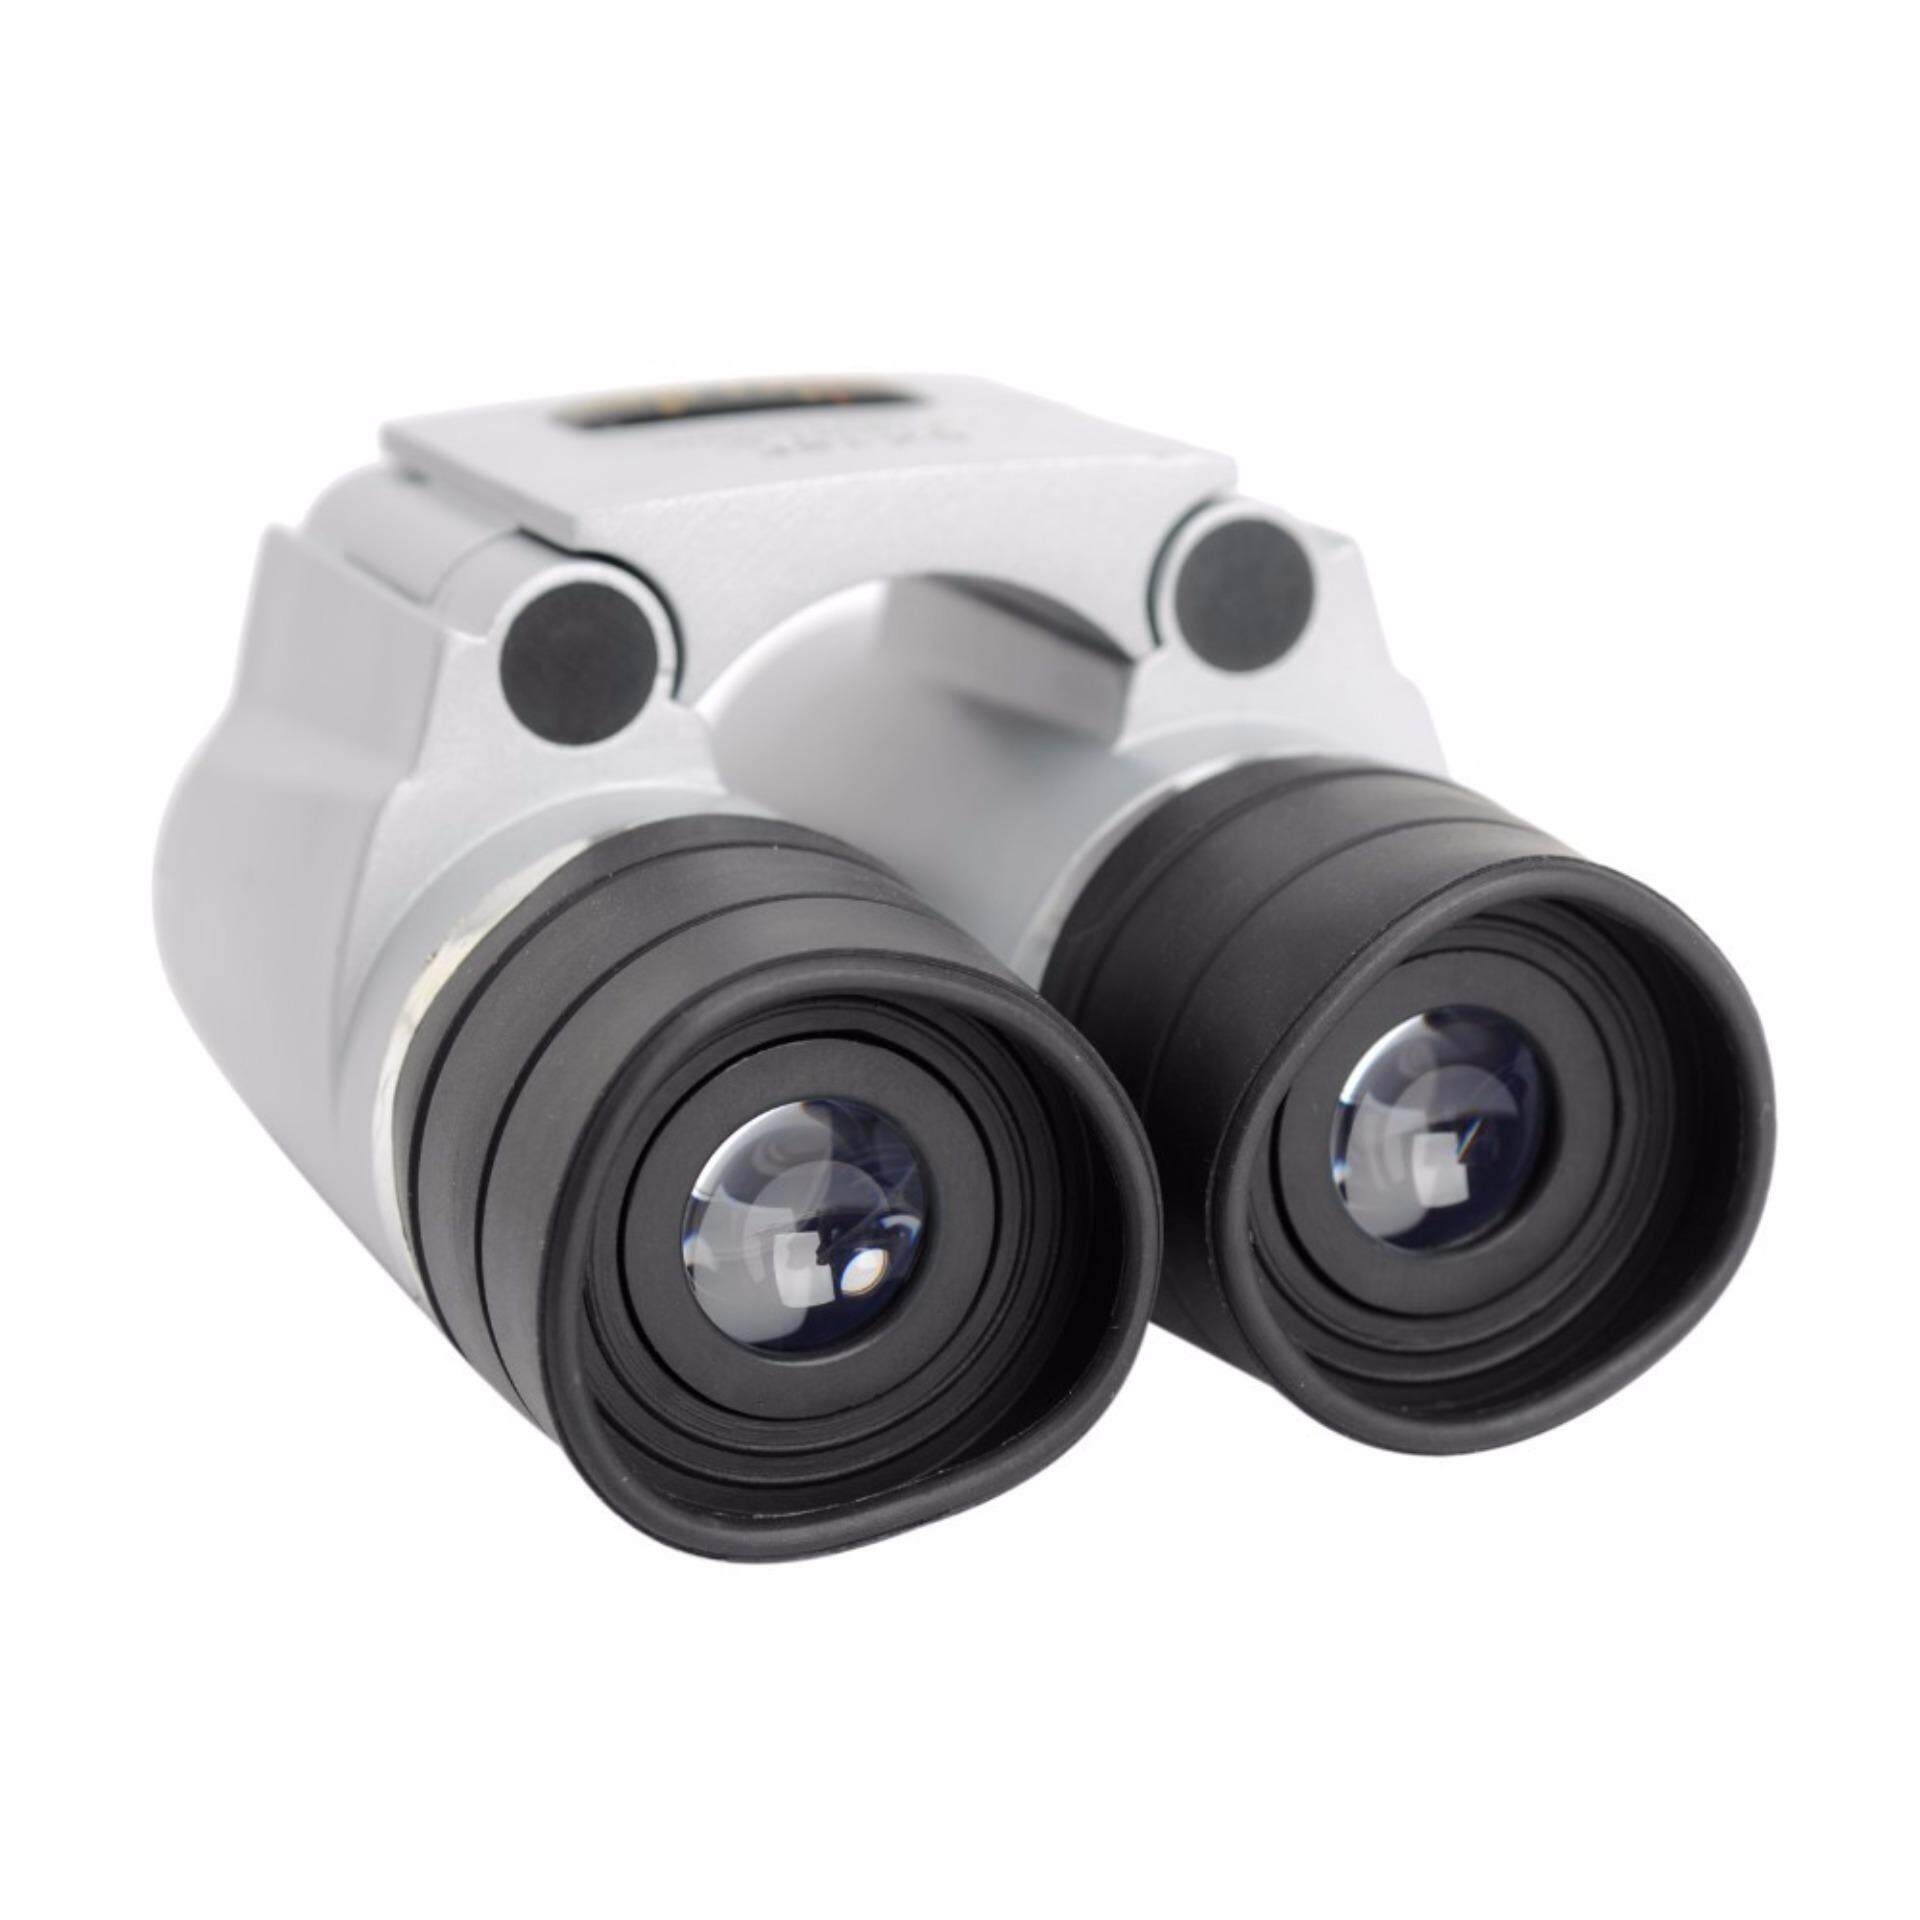 กล้องส่องทางไกล Binocular NIKULA 6x18 ระยะ 1000เมตร กำลังขยาย 6เท่าซูม 8x40mm